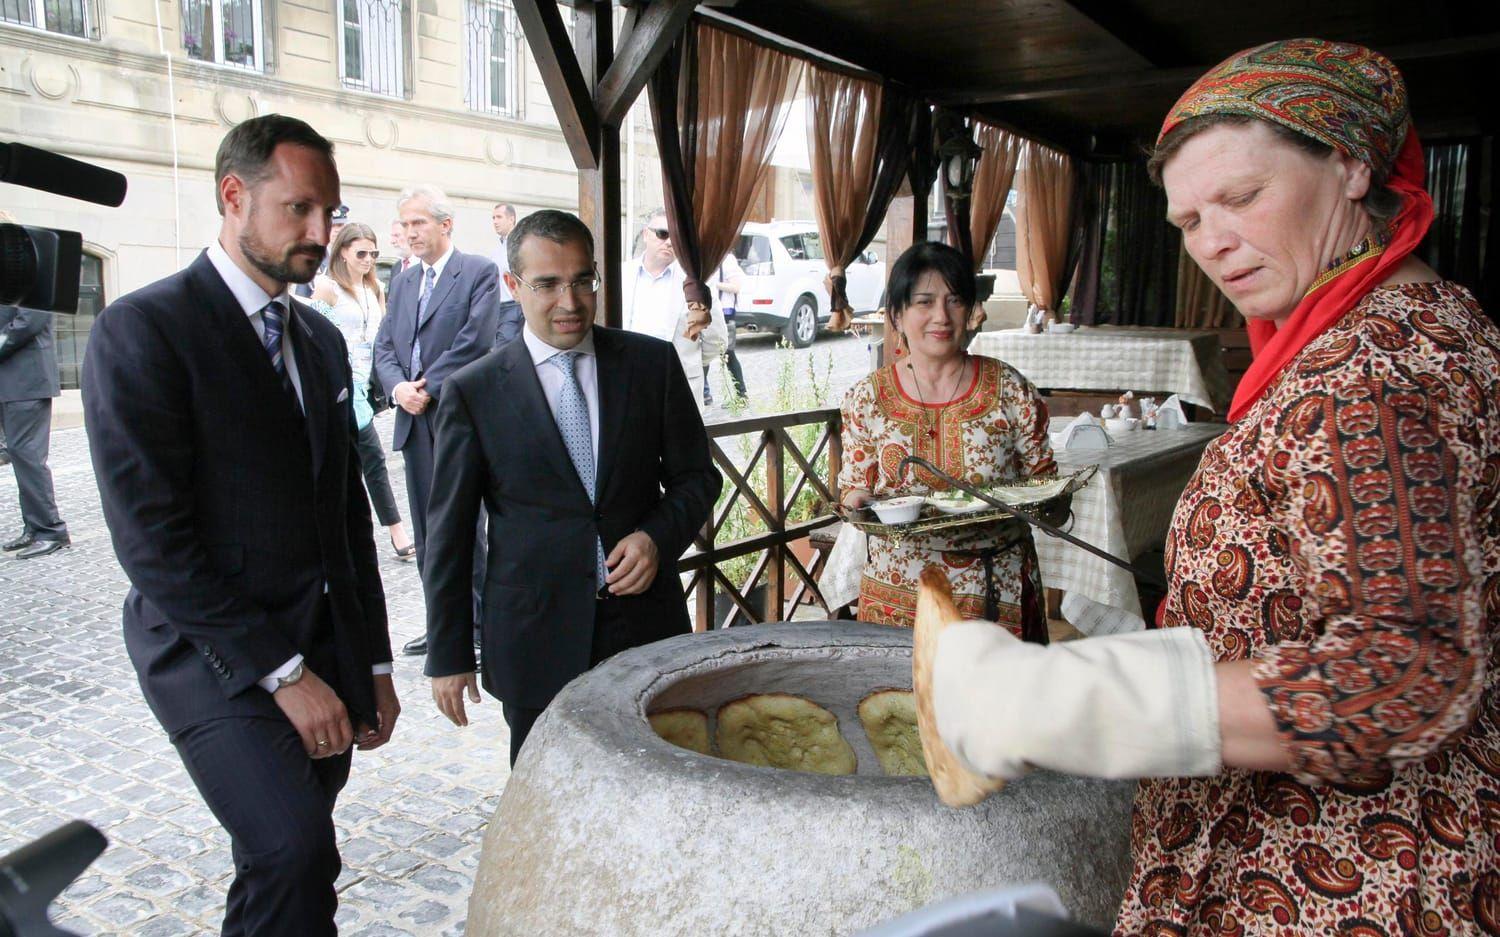 Norges kronprins Haakon får testa det klassiska brödet bakat i den traditionella cylinderformade ugnen. Bild: TT.